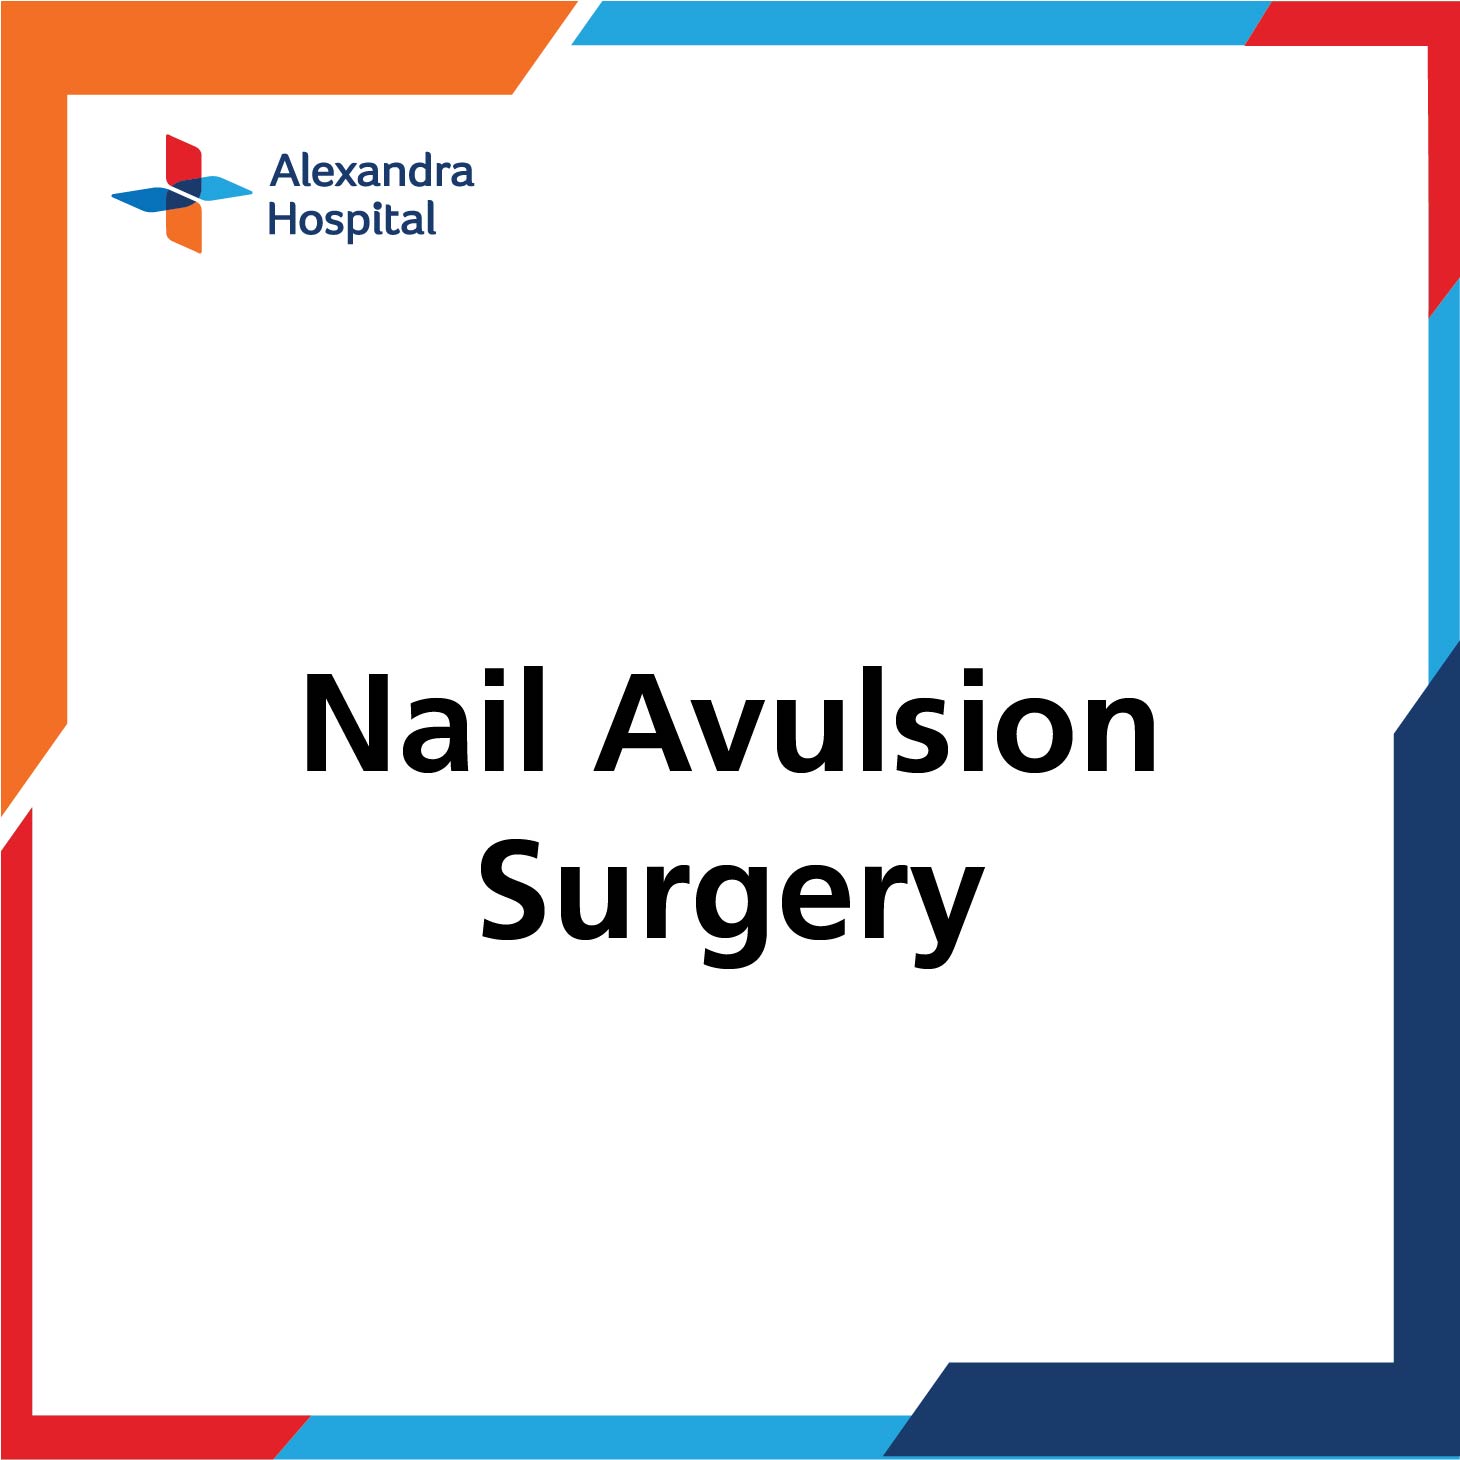 POD - Nail Avulsion Surgery